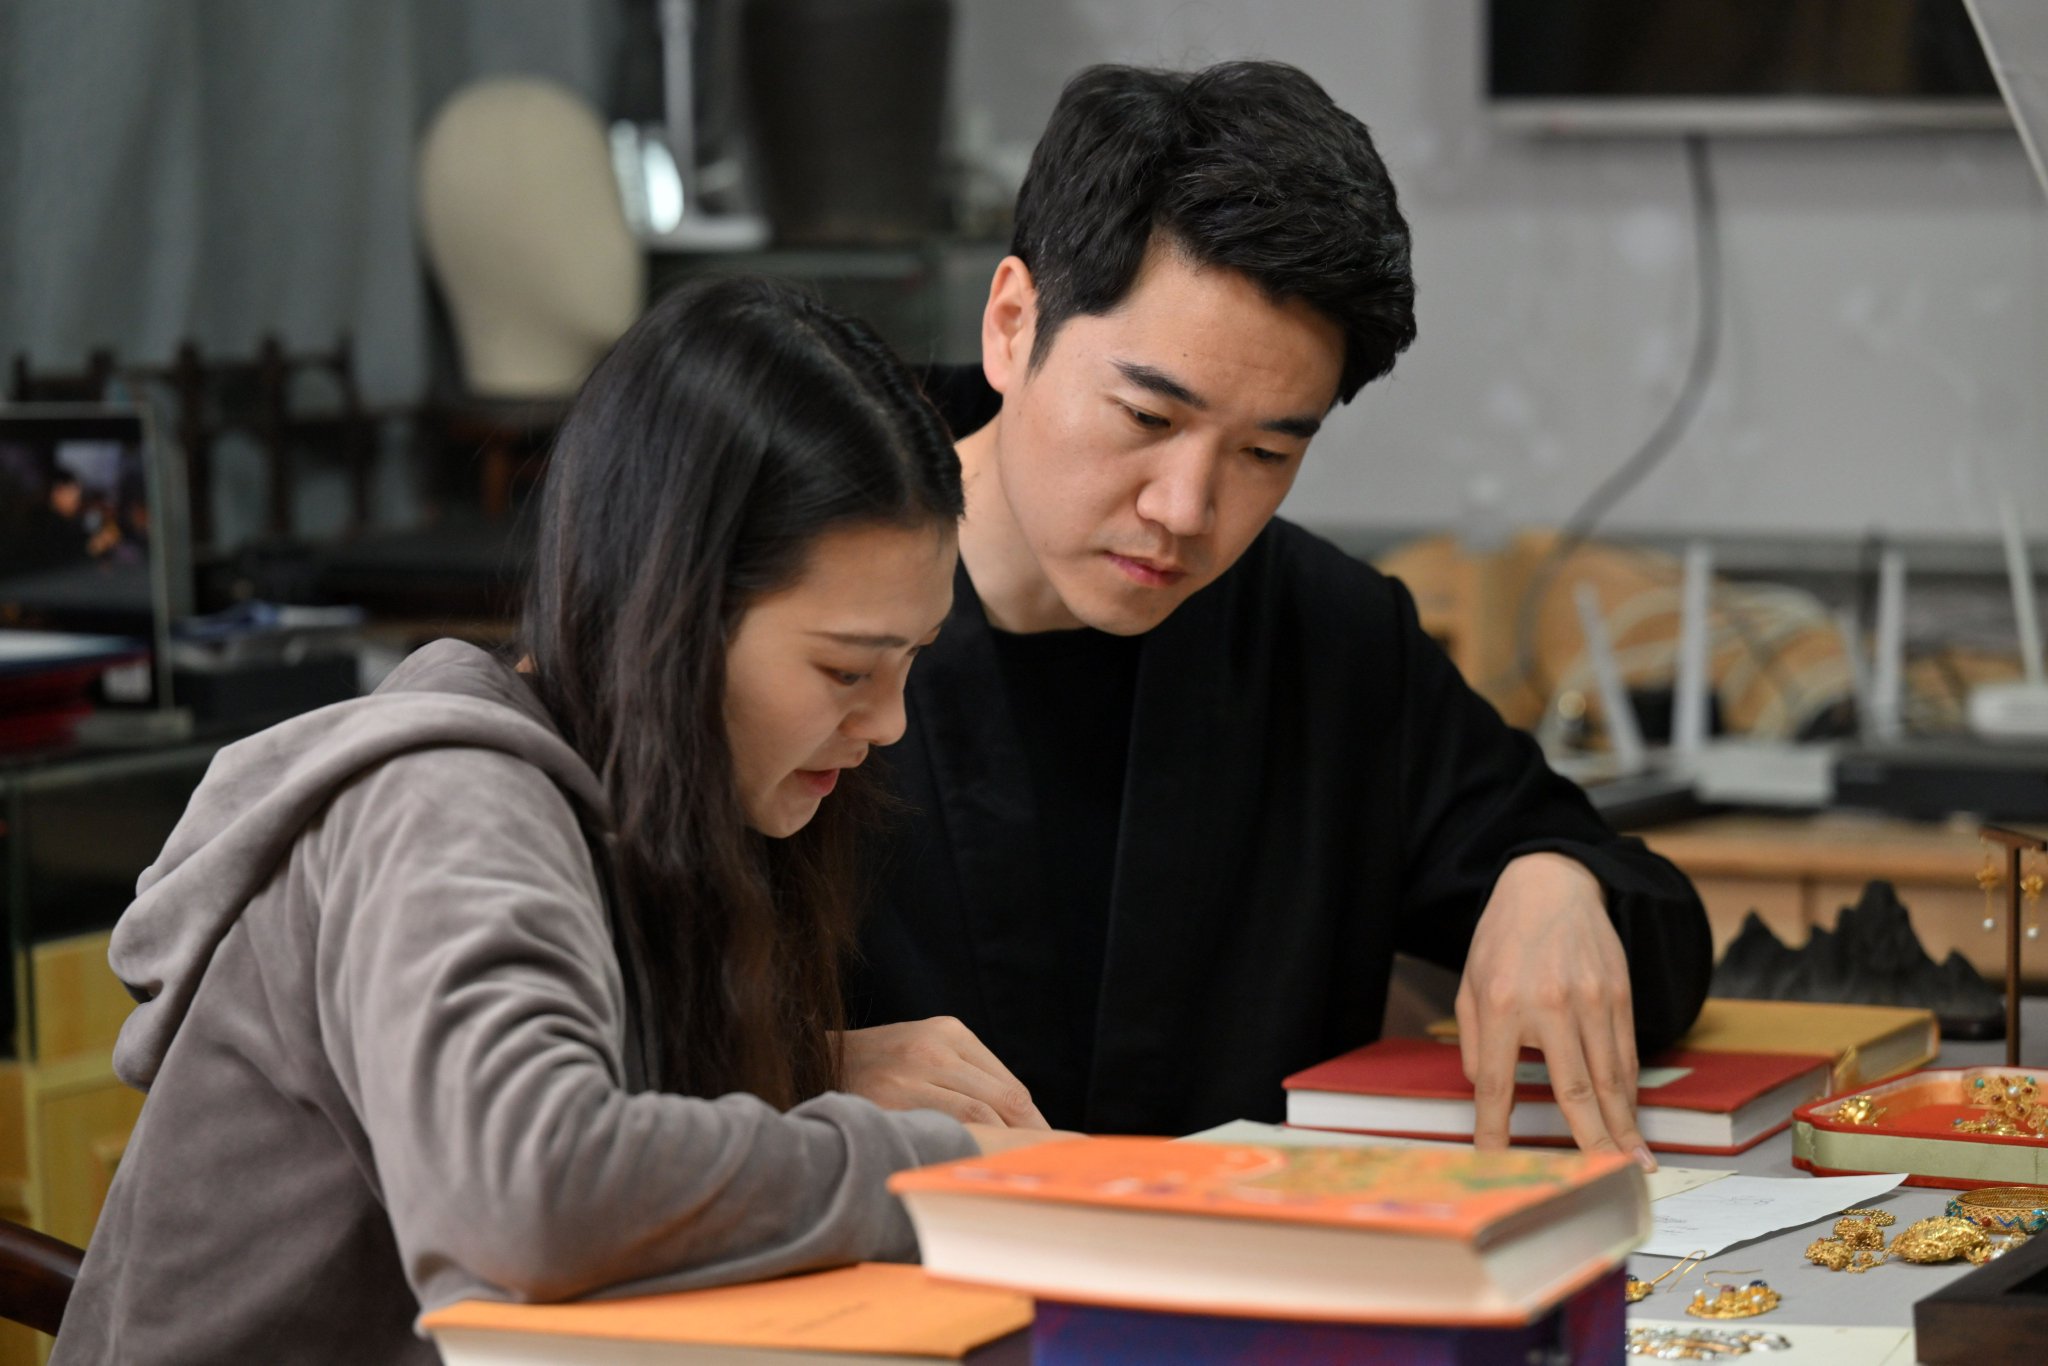 马赛（右）和女朋友闵方苹（左）在工作室内讨论设计稿（3月19日摄）。新华社记者 李然摄